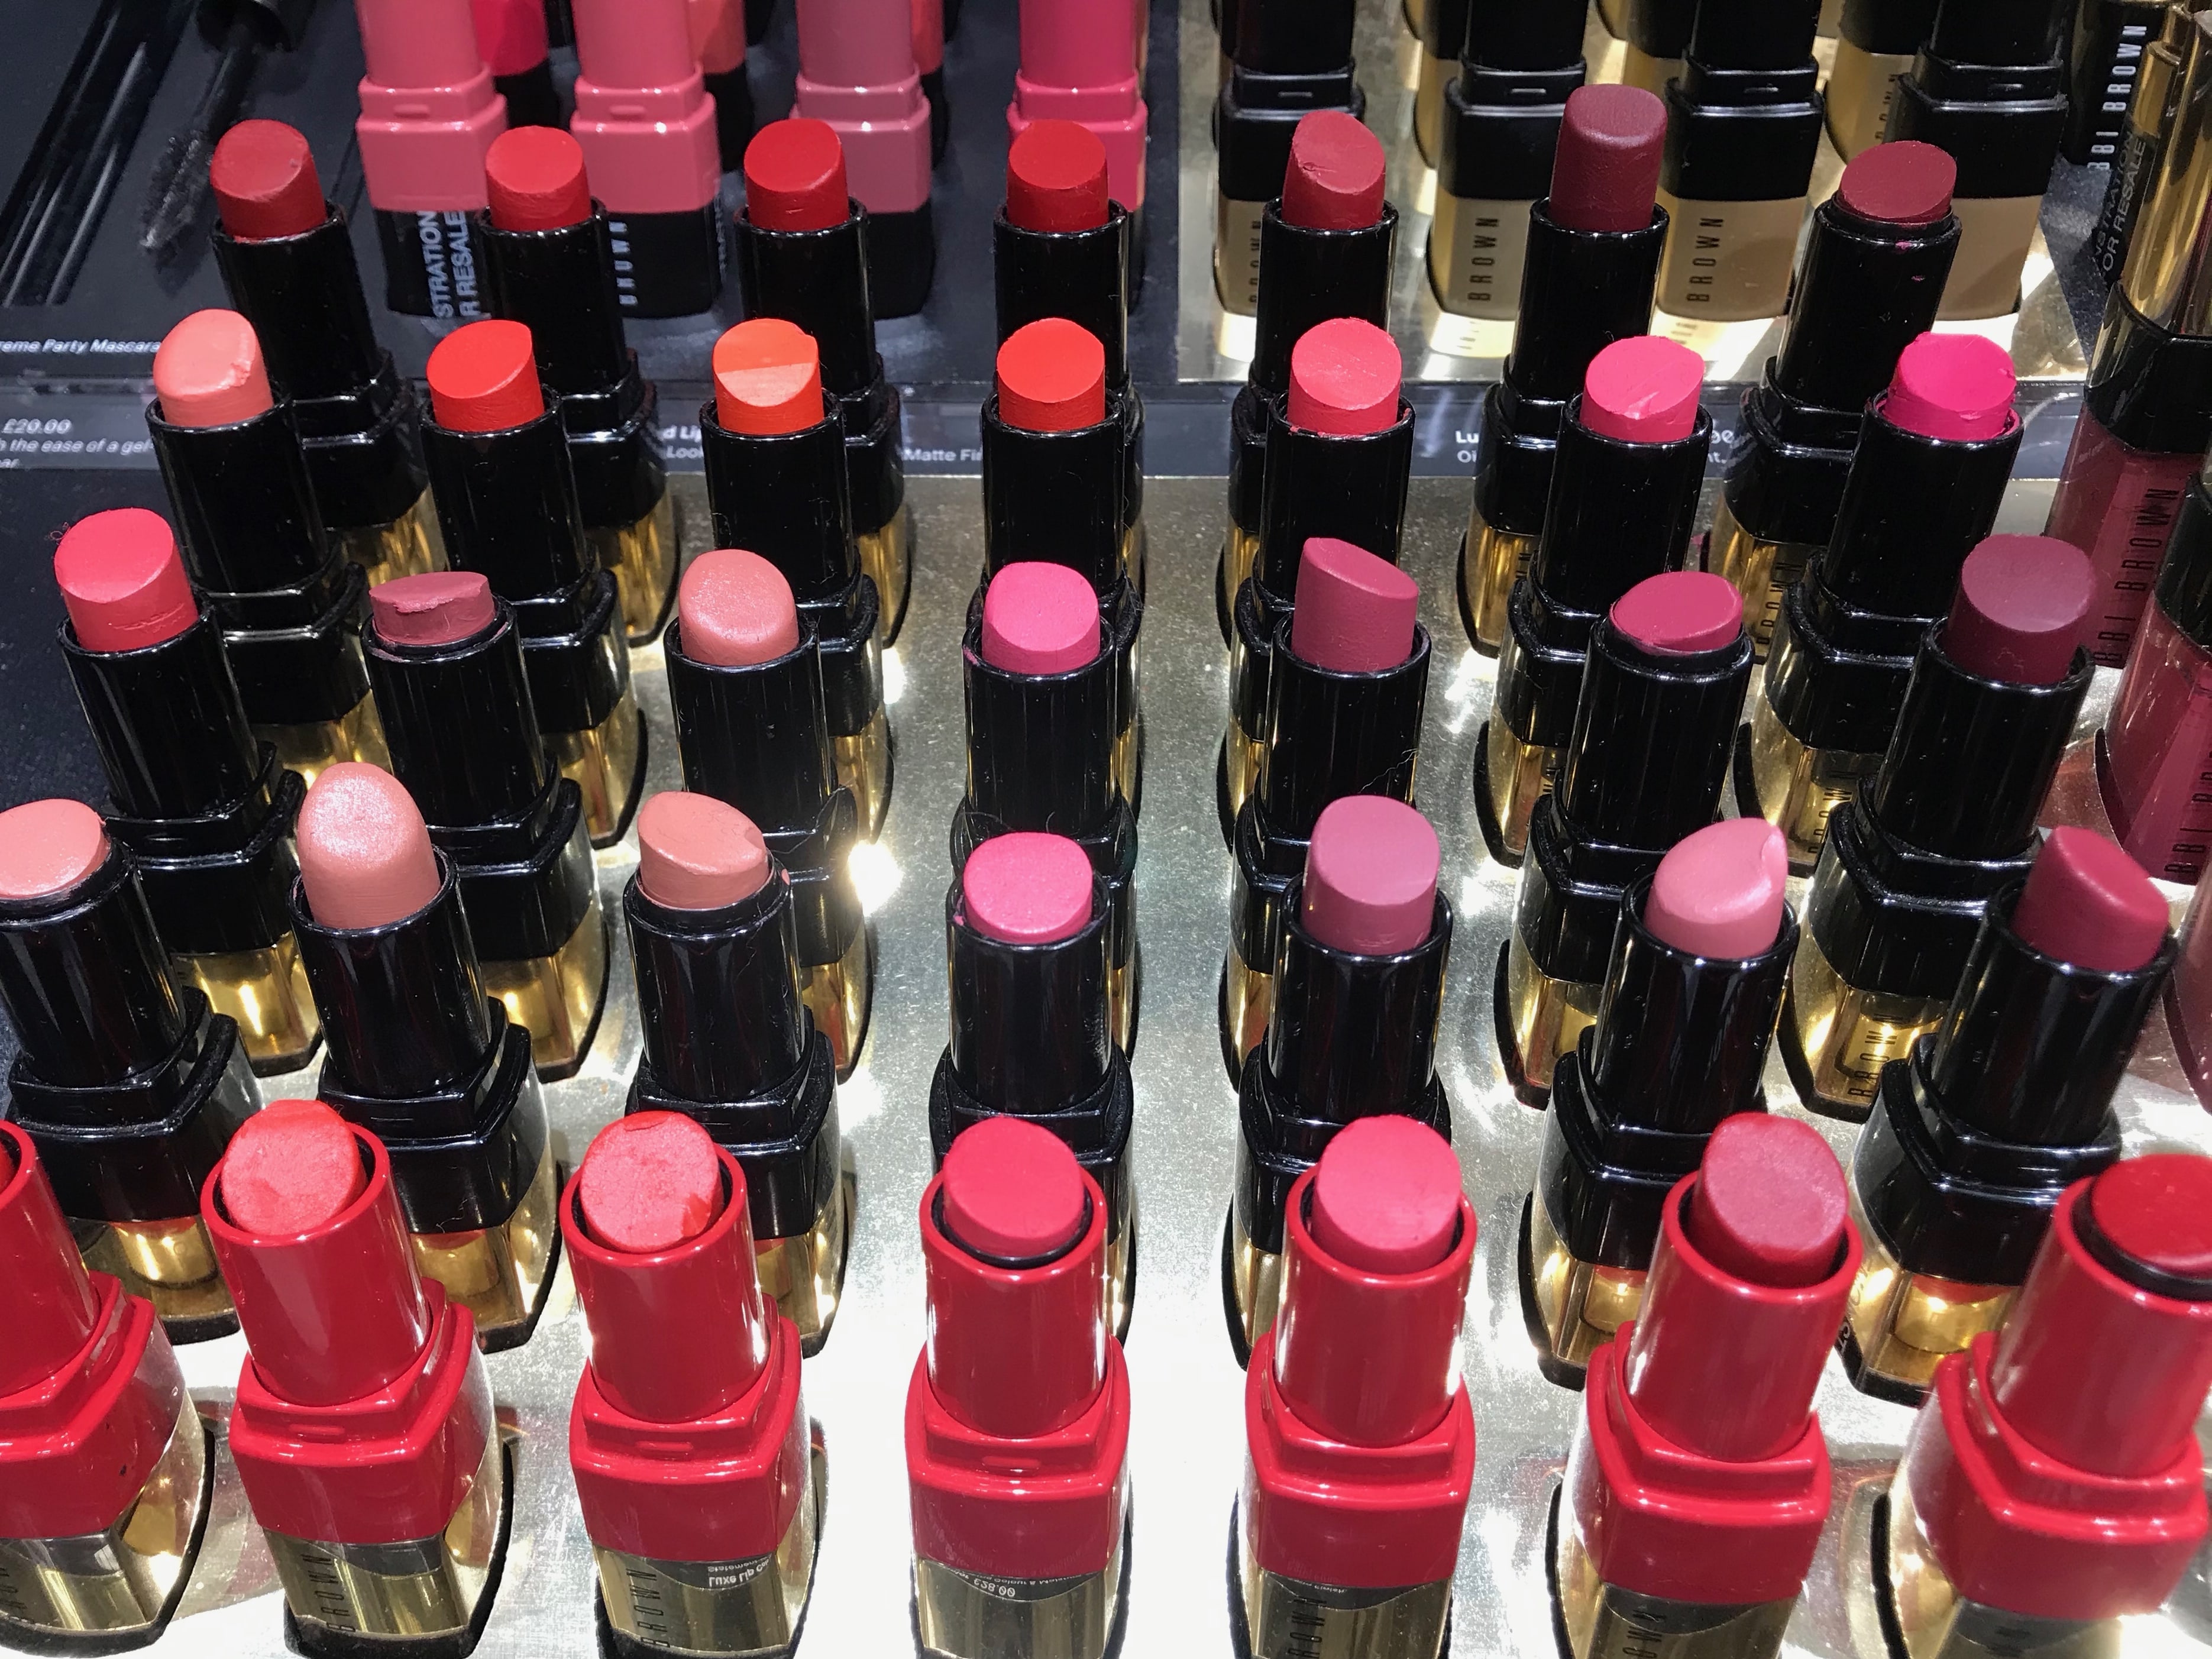 Lipsticks at Bobbi Brown